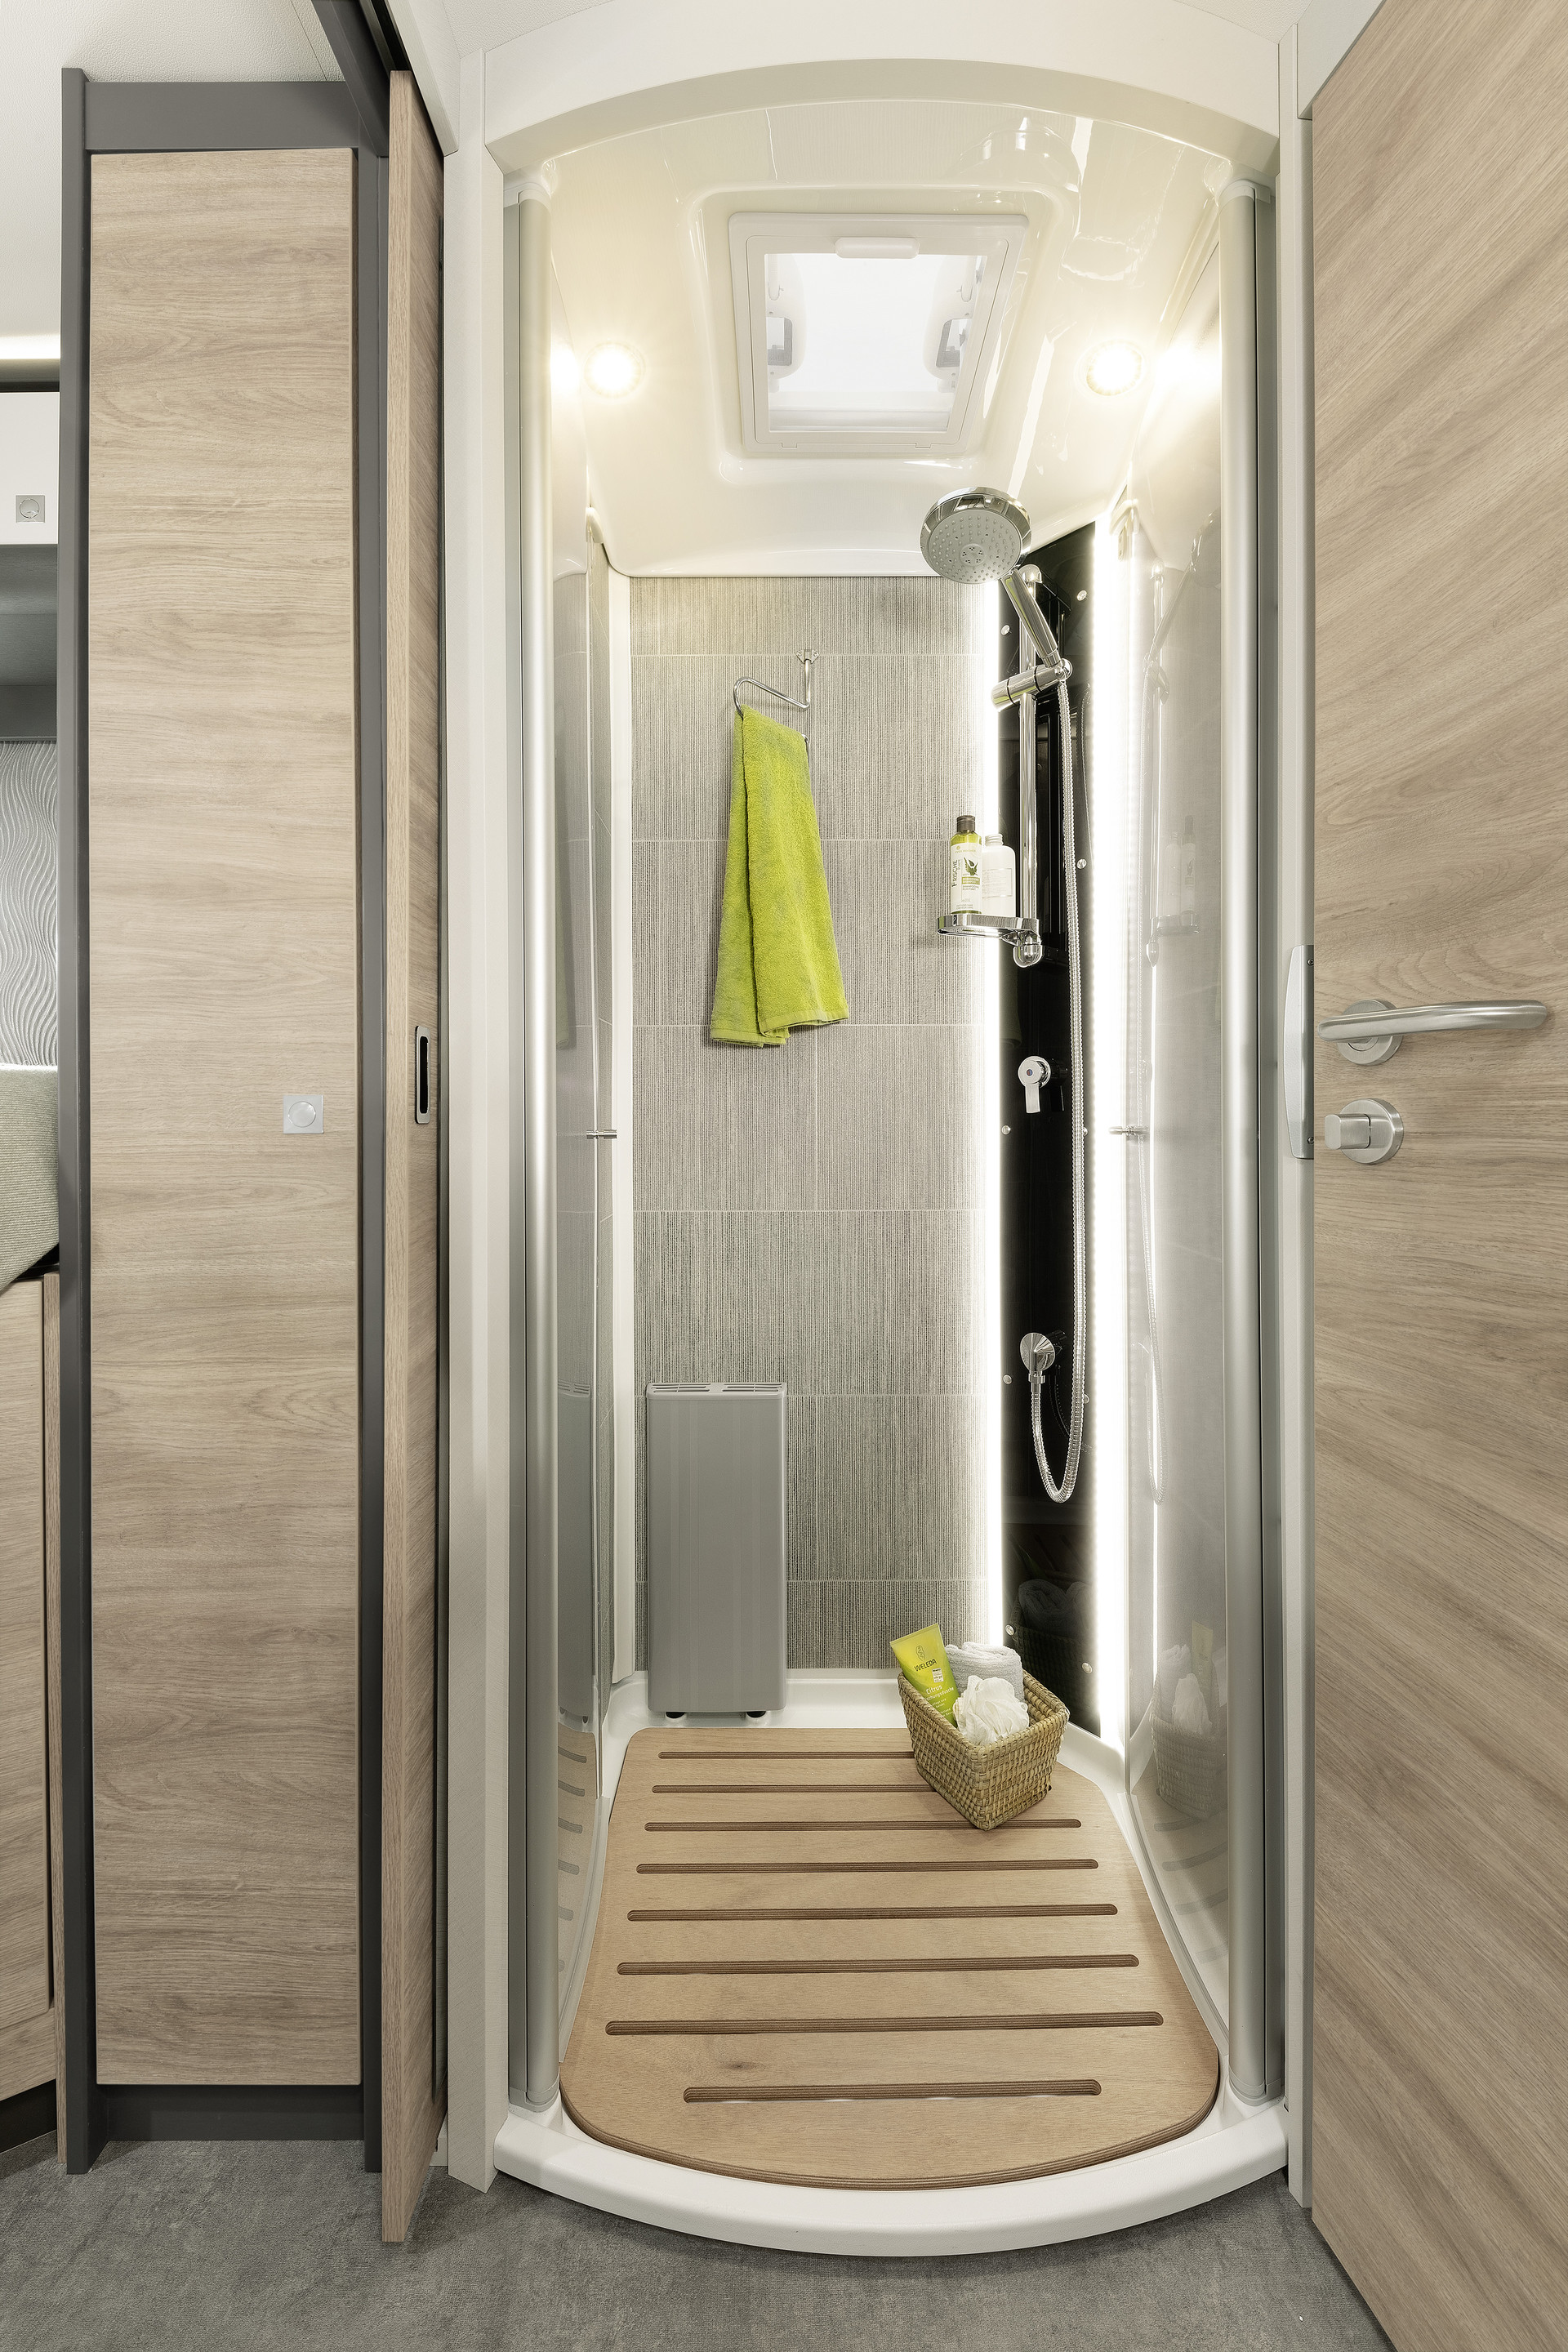 Molto spazio anche nella doccia separata con rubinetteria retroilluminata.